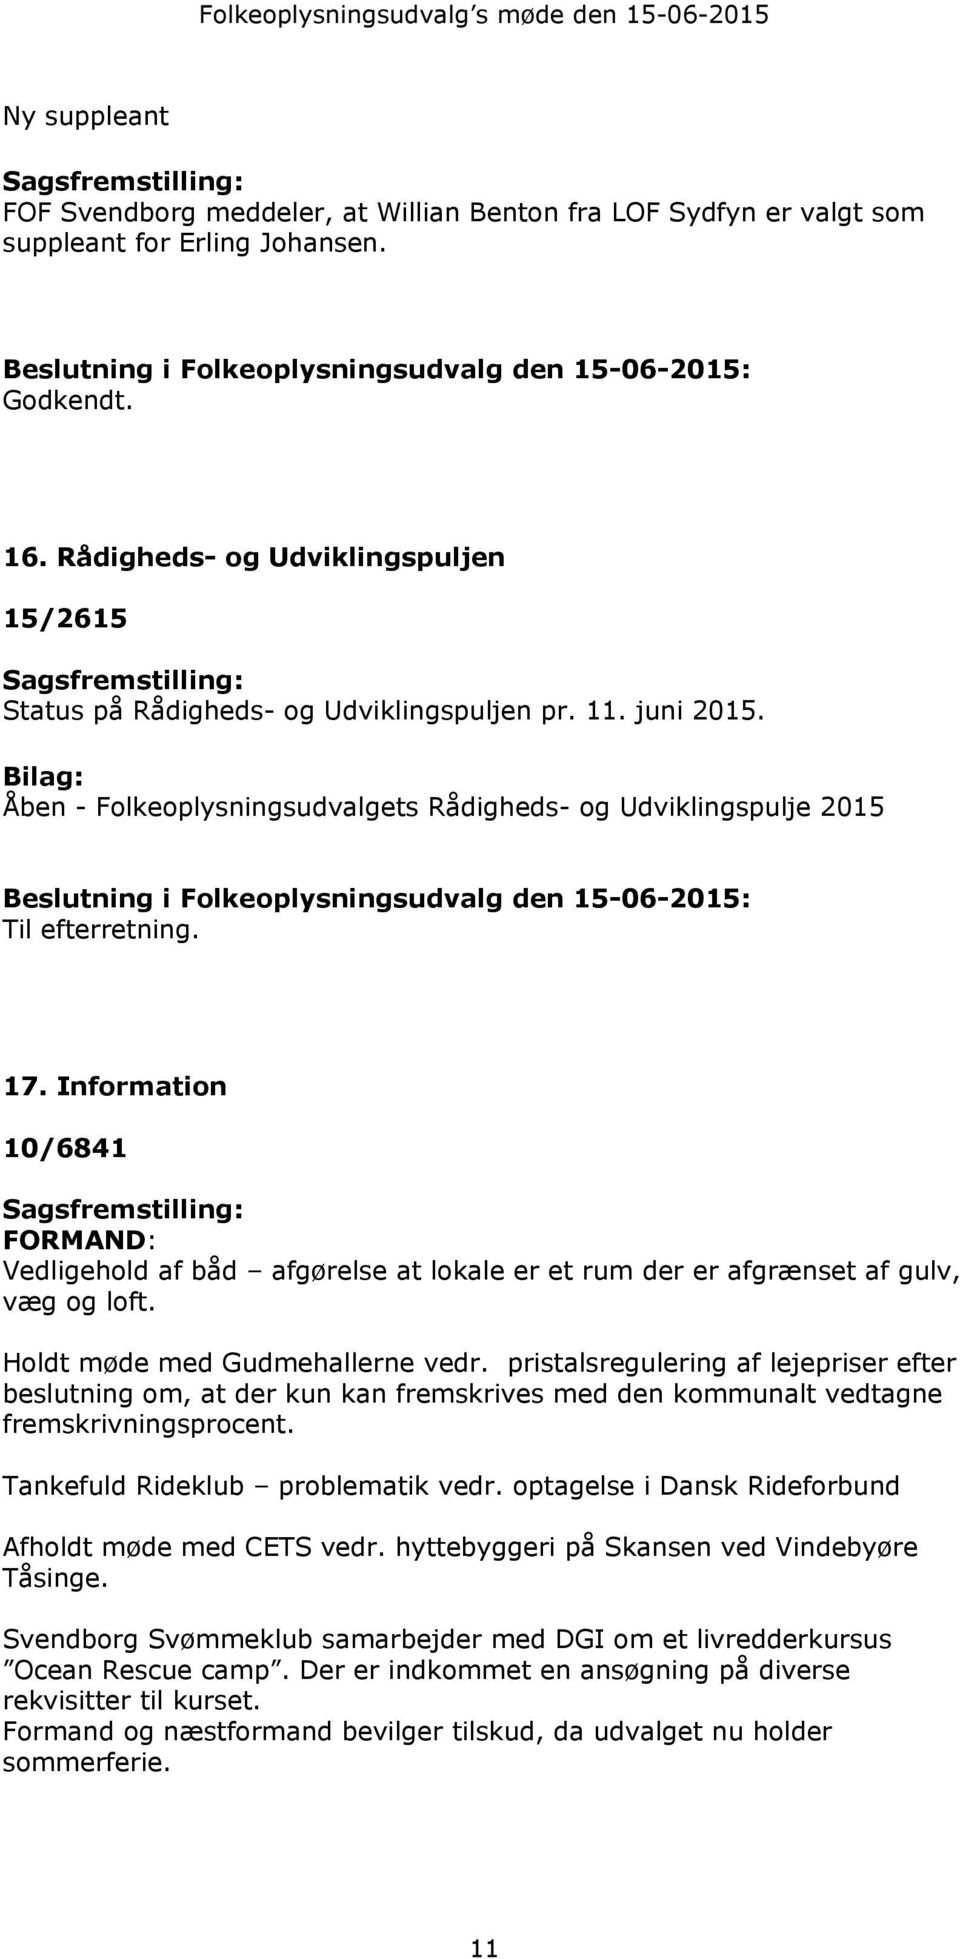 Bilag: Åben - Folkeoplysningsudvalgets Rådigheds- og Udviklingspulje 2015 Beslutning i Folkeoplysningsudvalg den 15-06-2015: Til efterretning. 17.